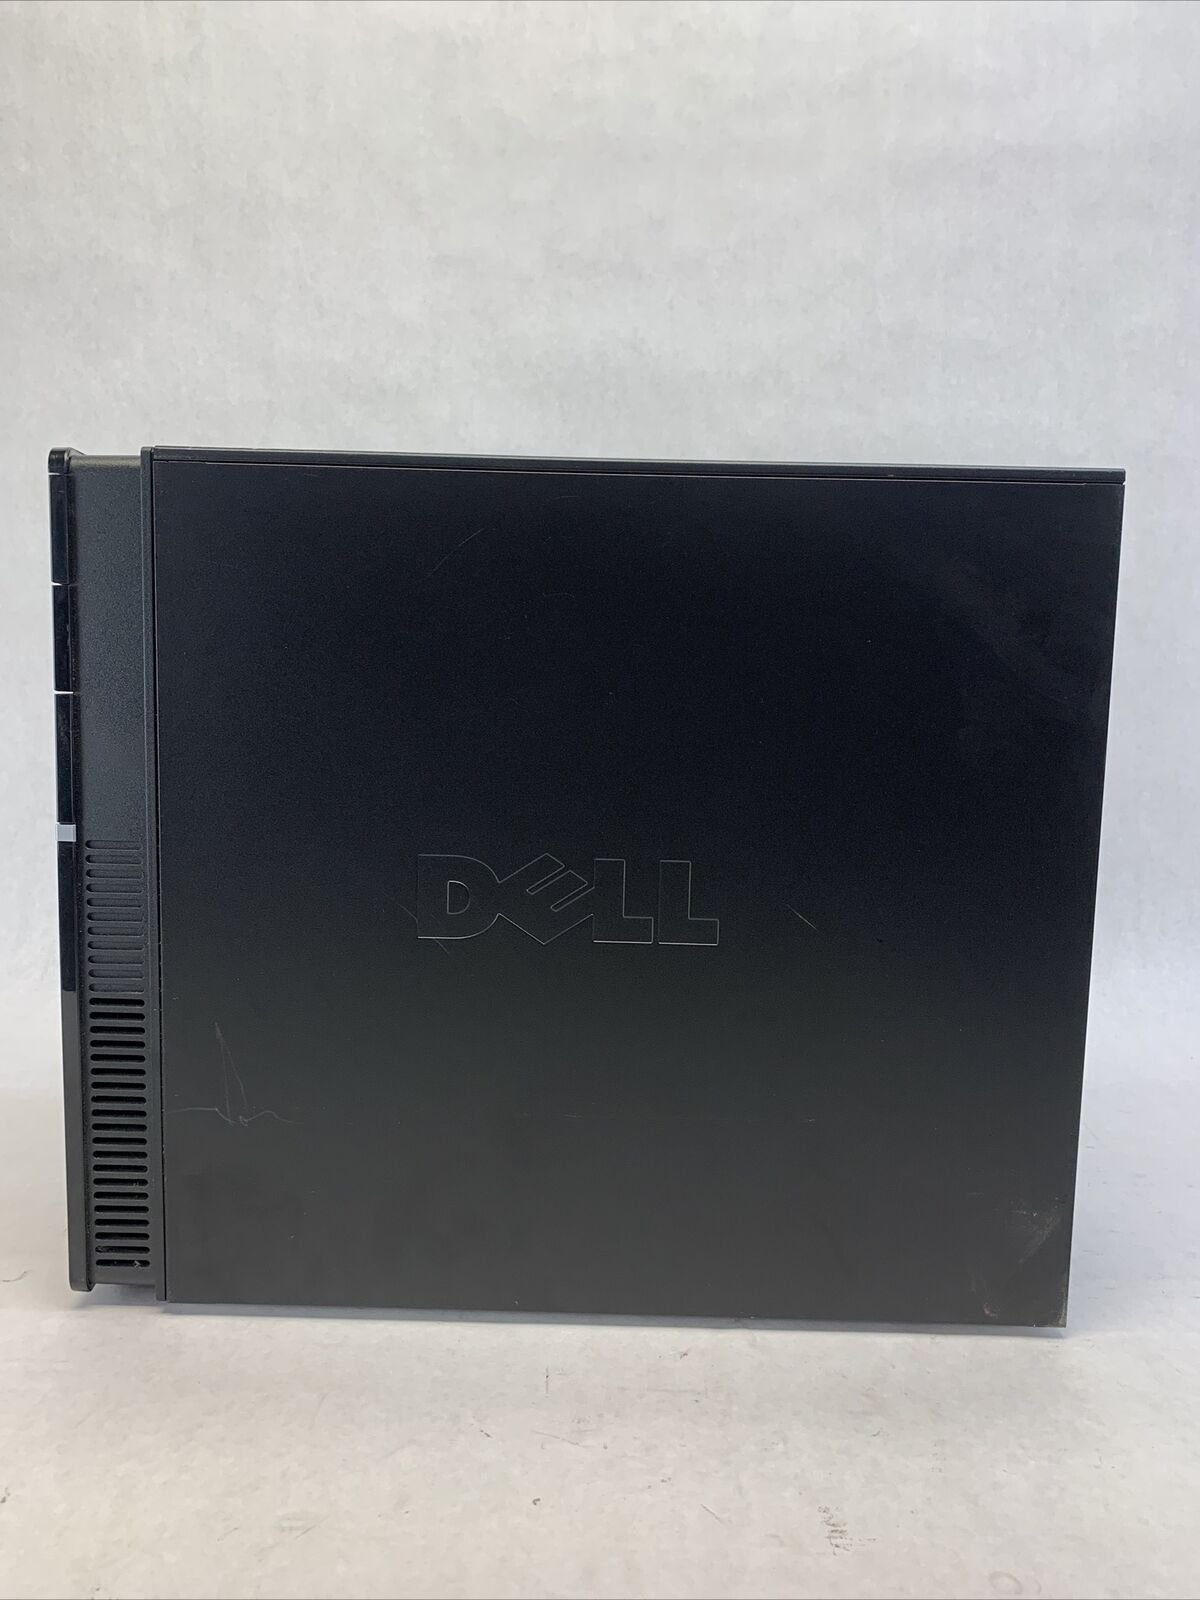 Dell Vostro 220 MT Intel Core 2 Duo E7500 2.93GHz 2GB RAM No HDD No OS